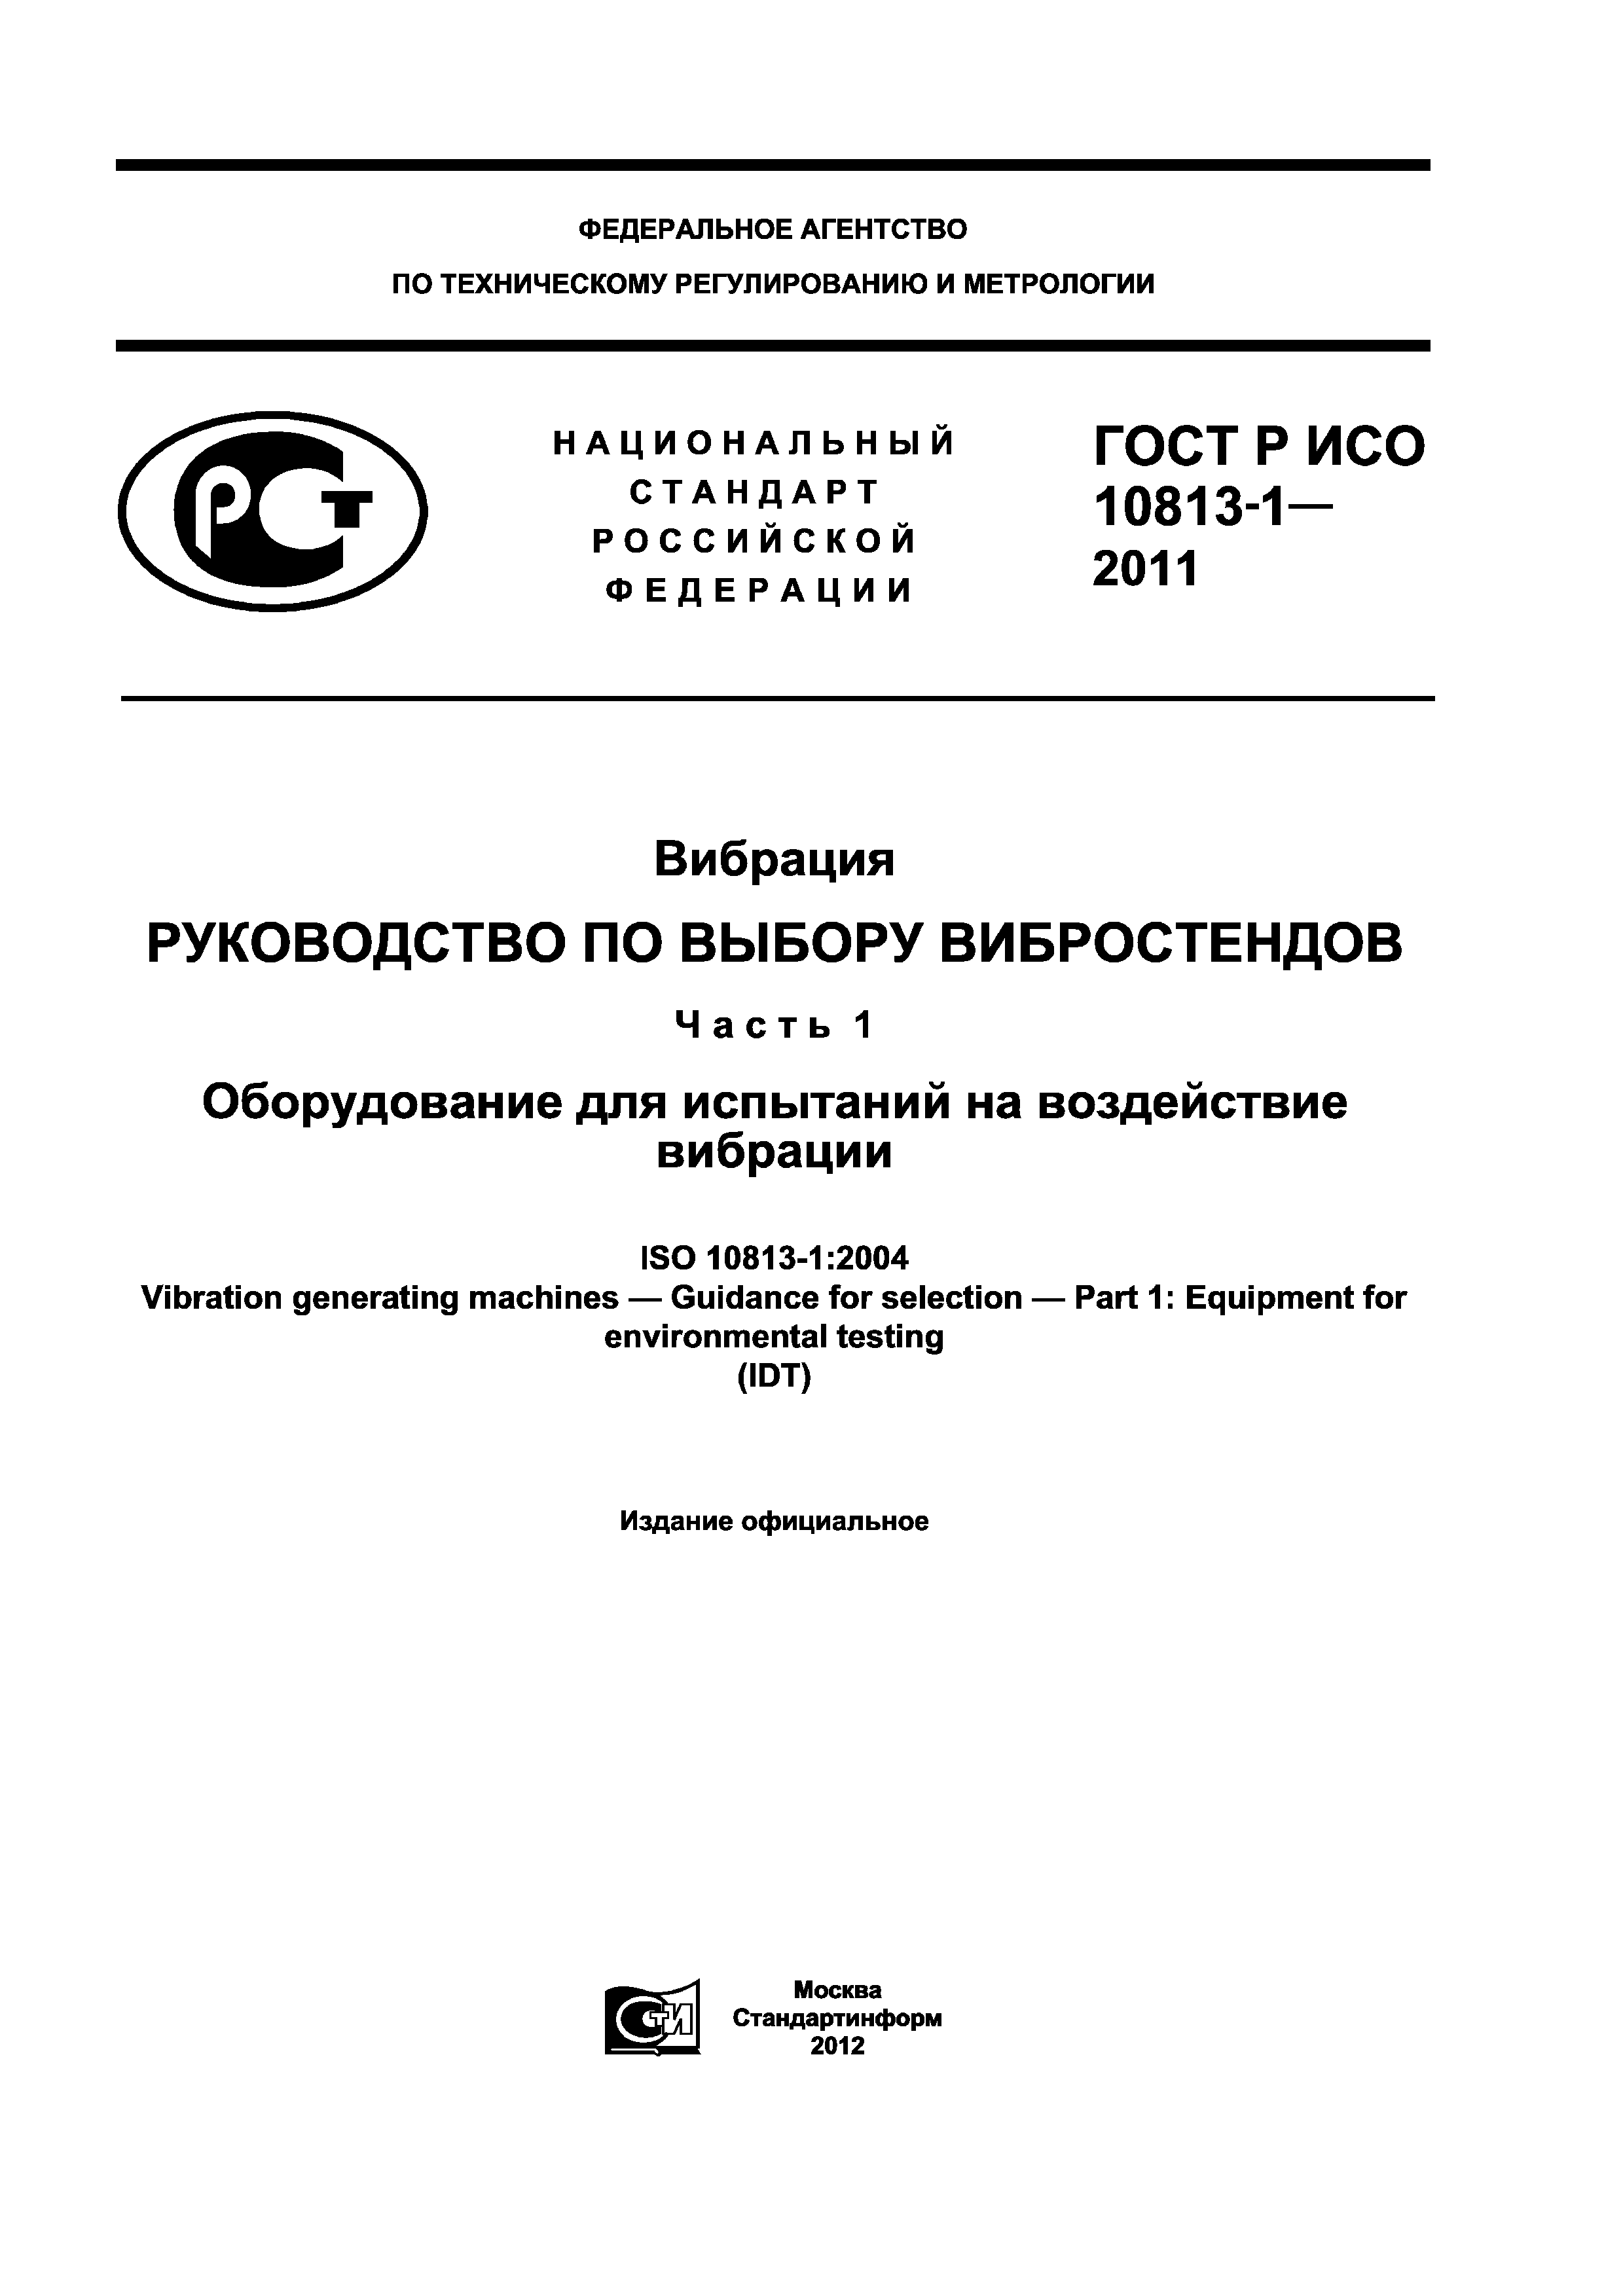 ГОСТ Р ИСО 10813-1-2011